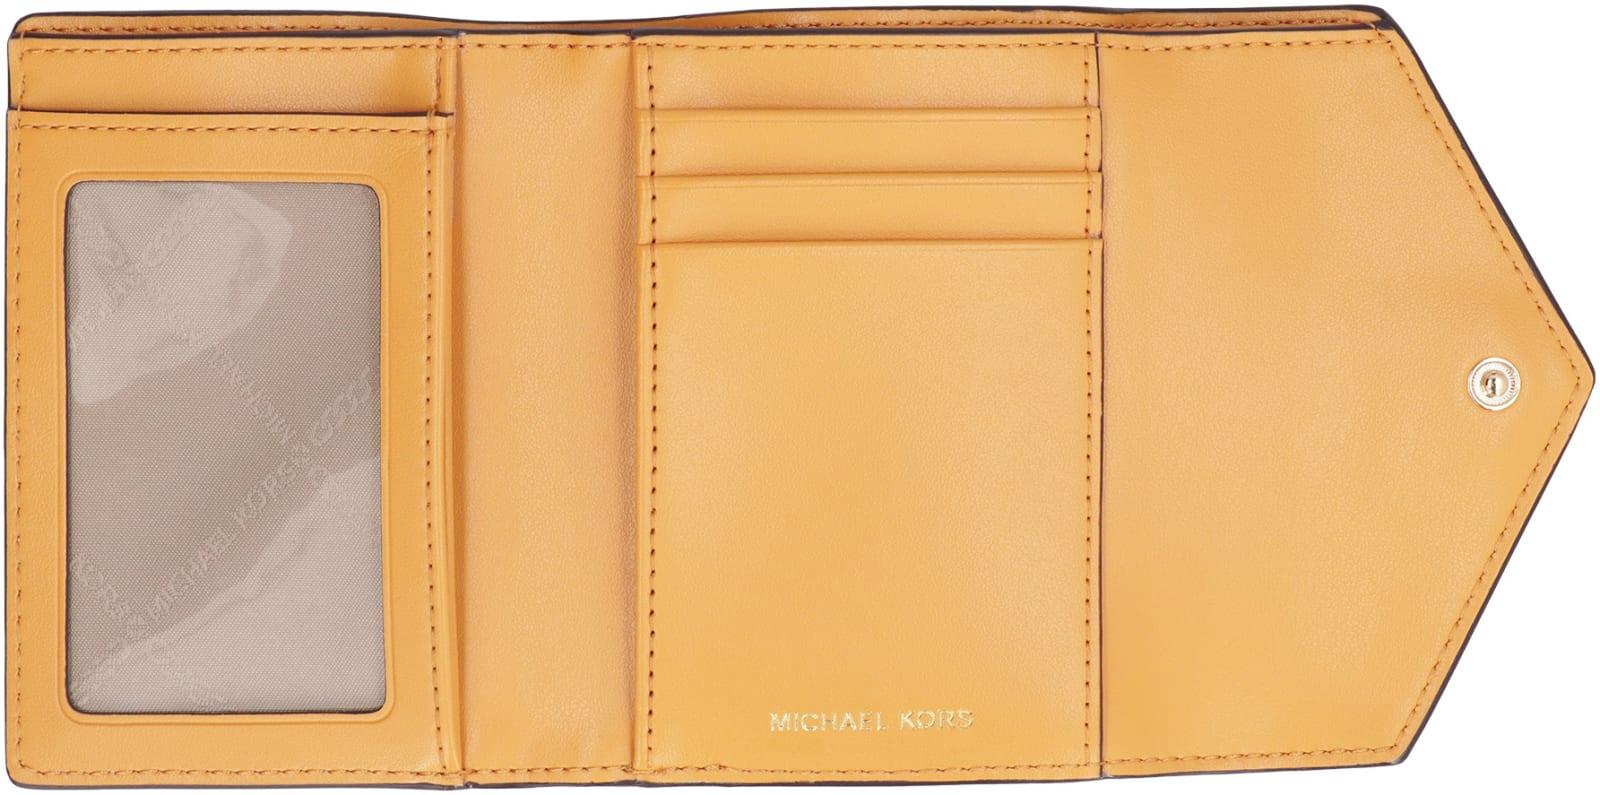 Michael Kors Carmen Small Wallet in Orange